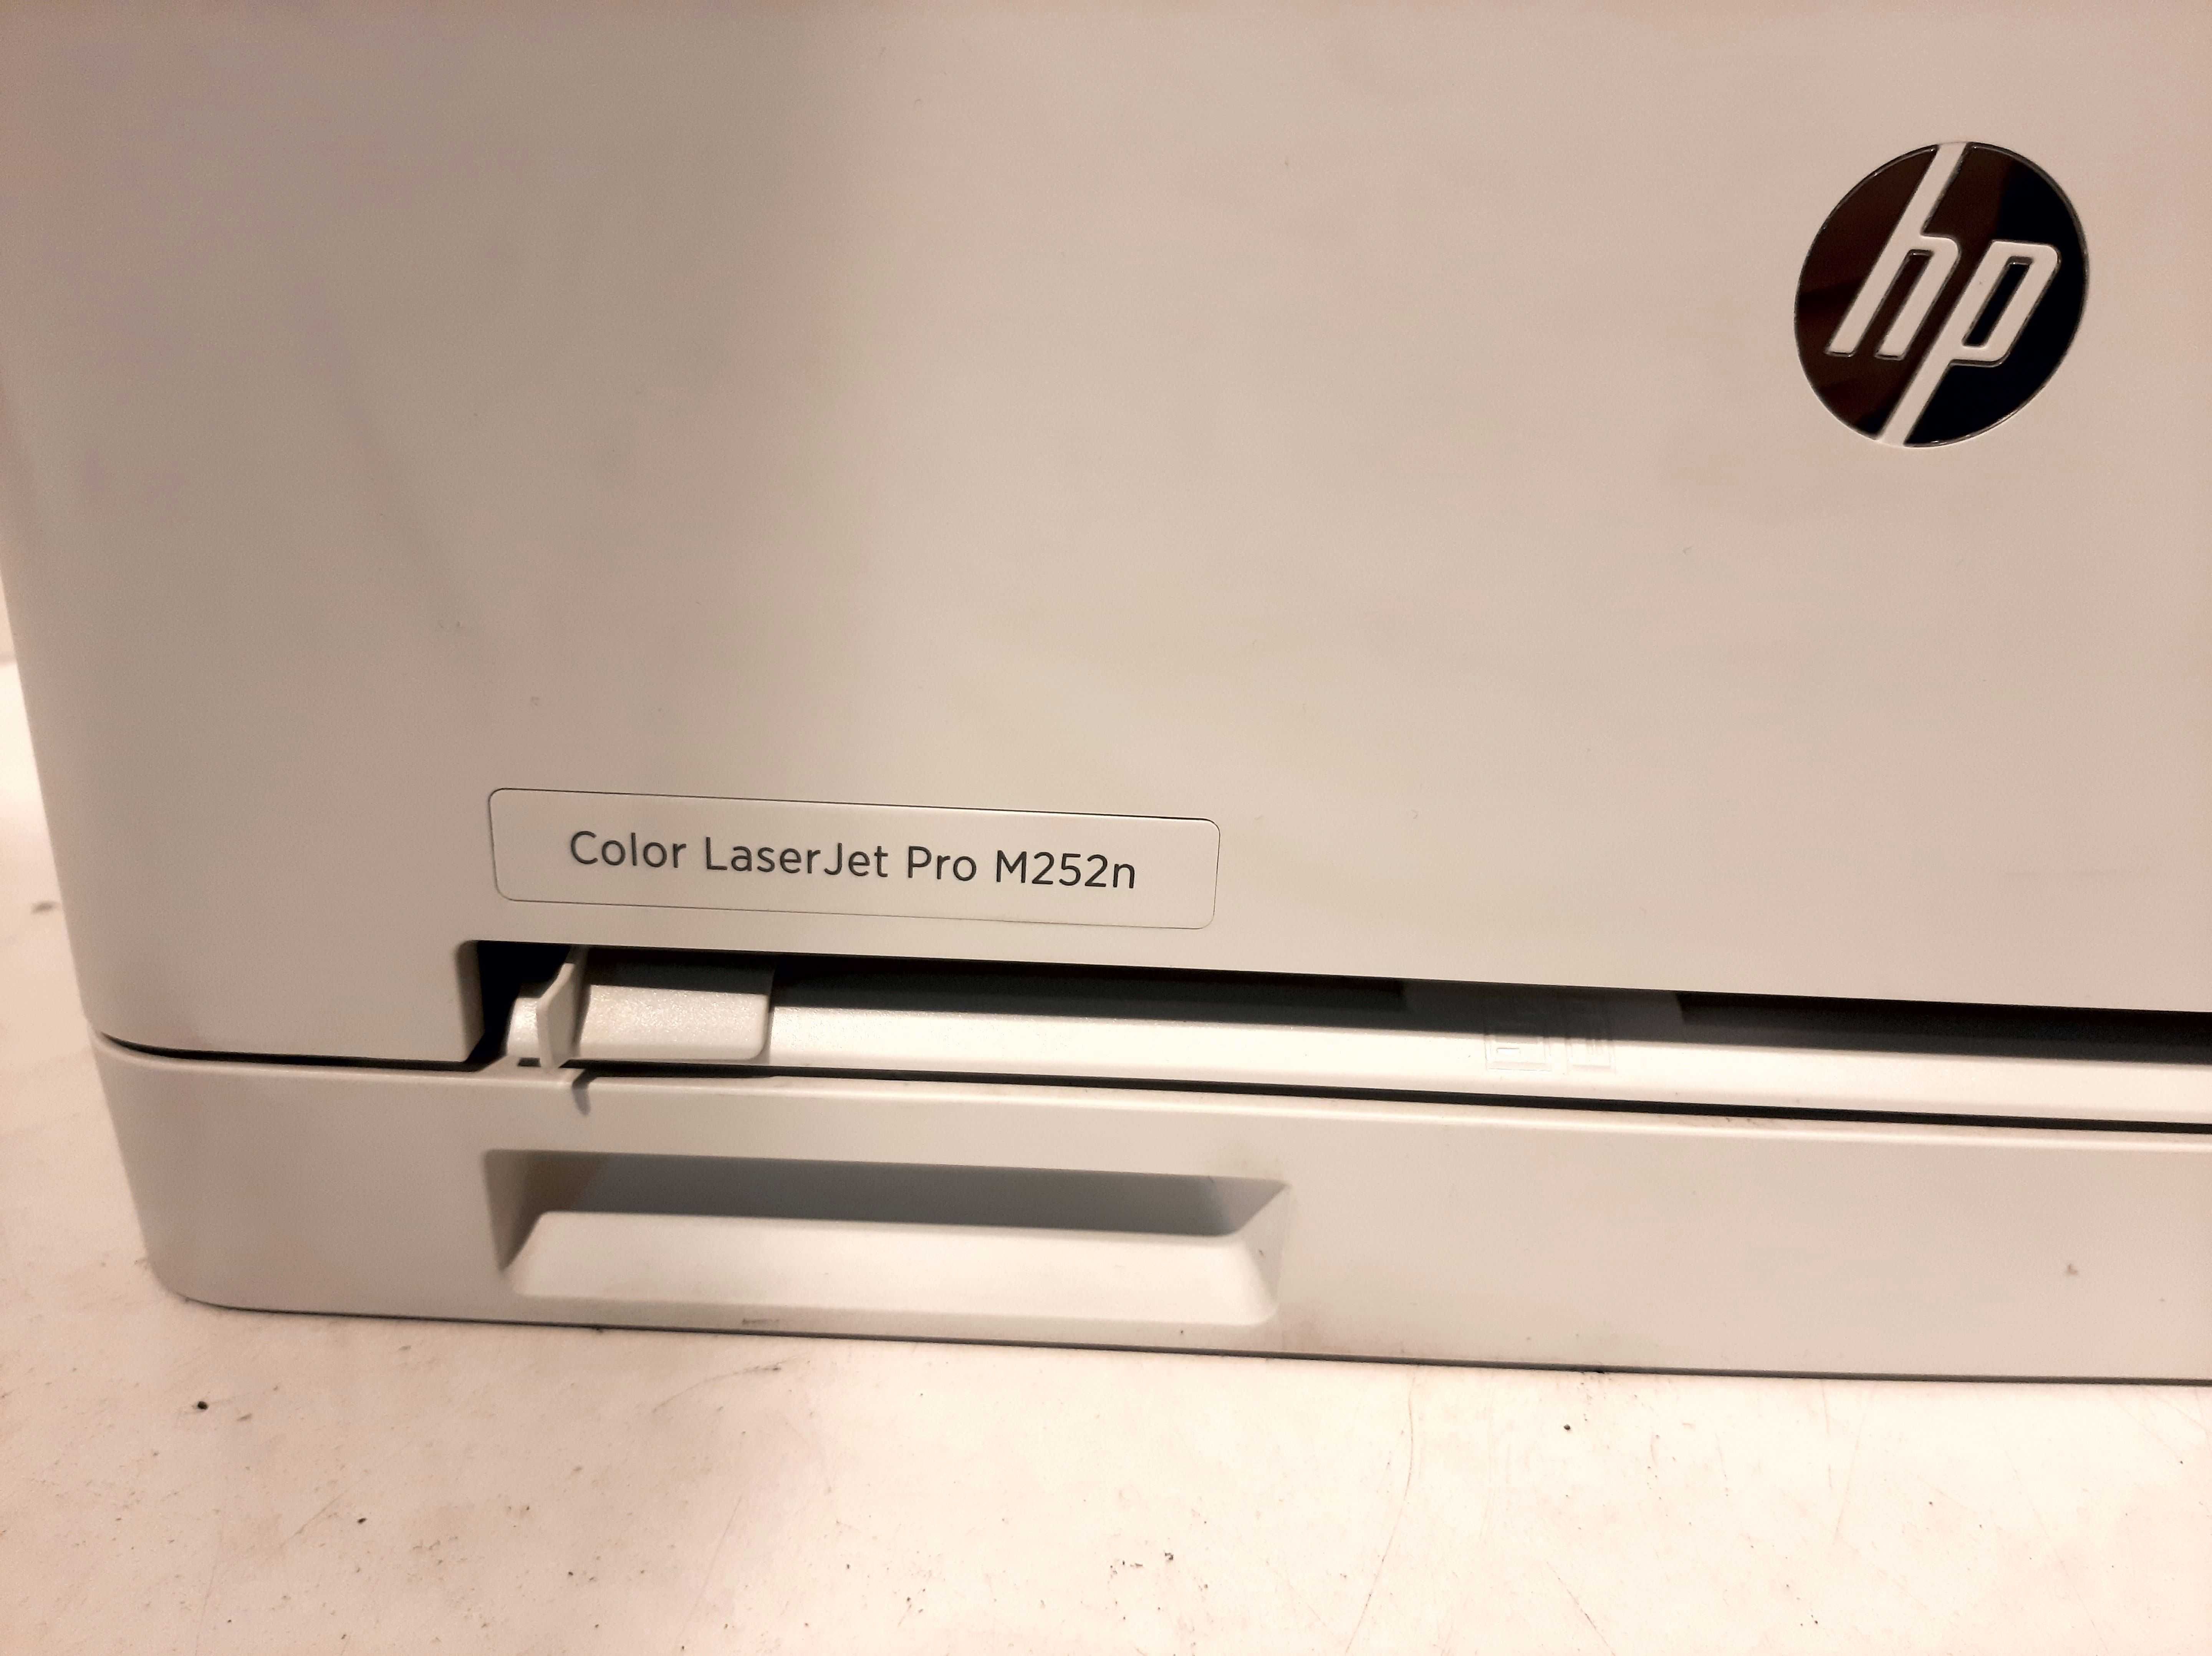 Принтер лазерный HP Color LaserJet Pro M252n, цветн., A4